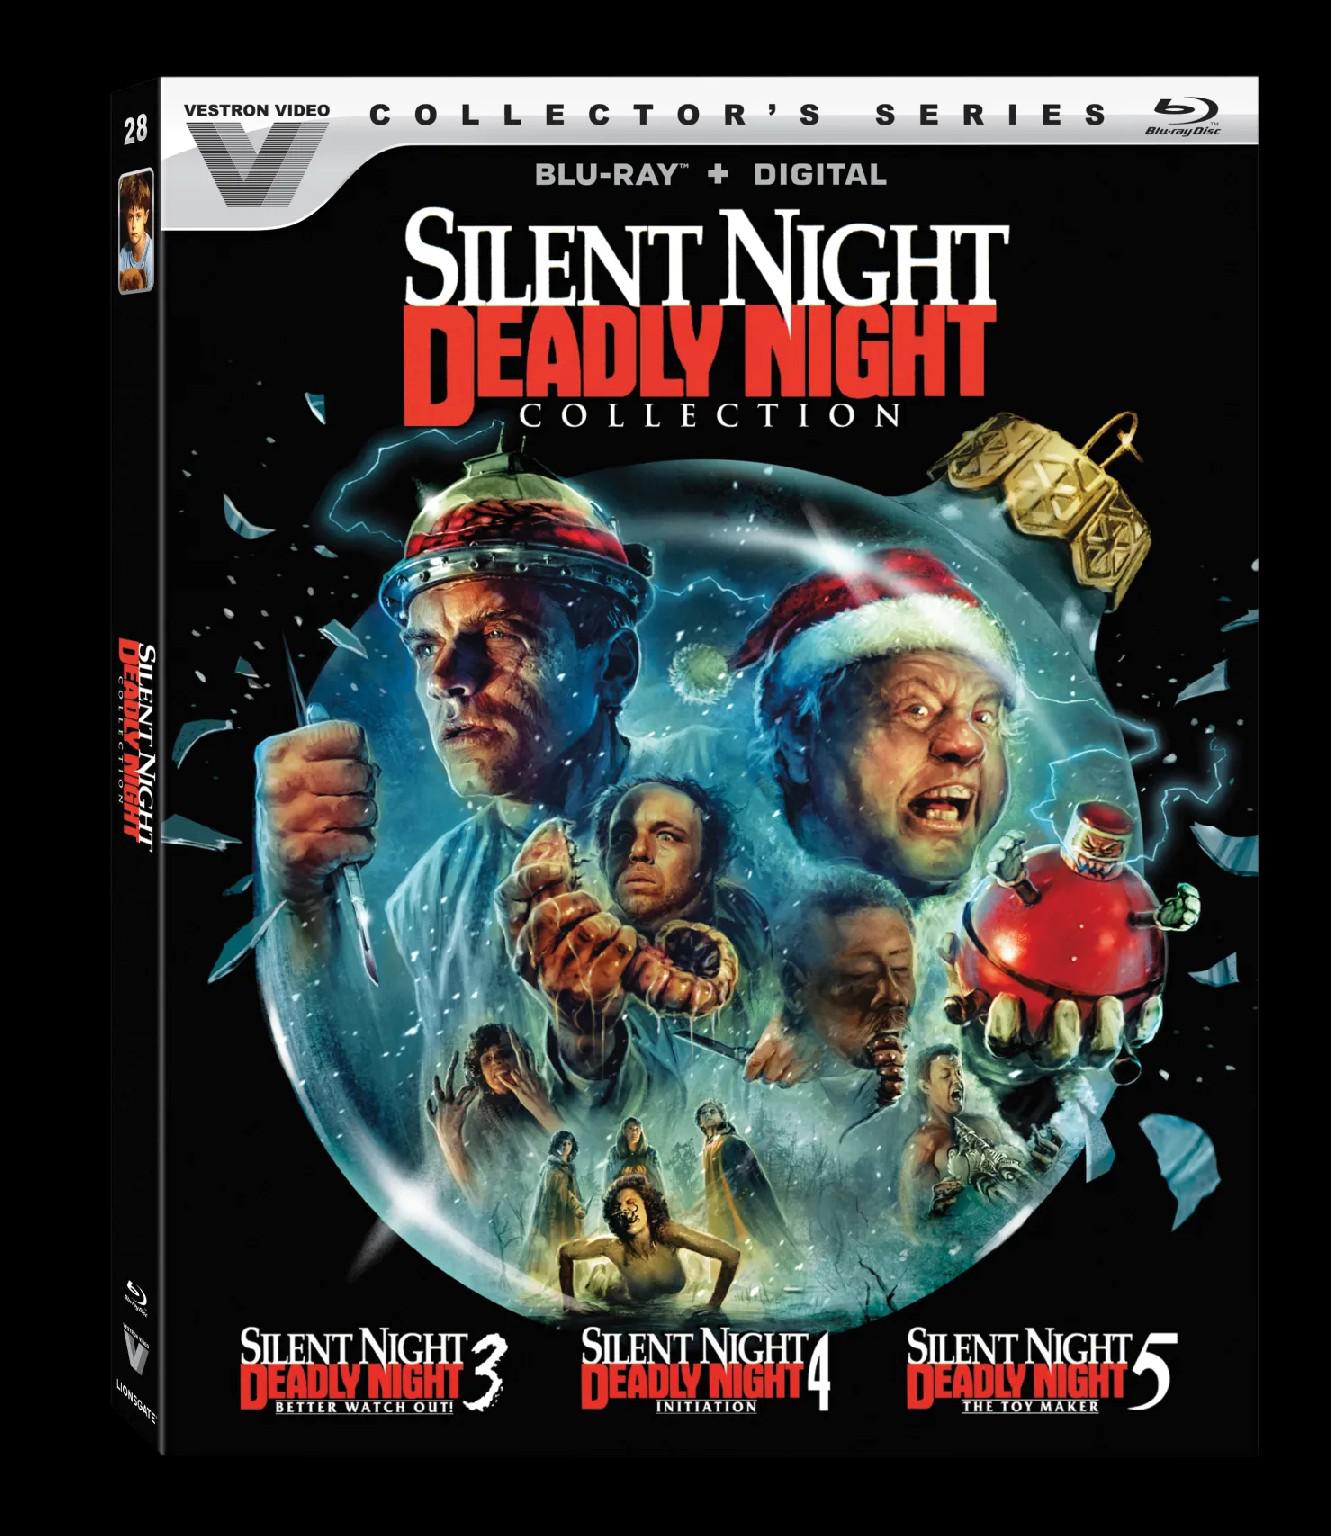 Novo Blu-Ray da coleção Silent Night, Deadly Night apresenta 3 sequências